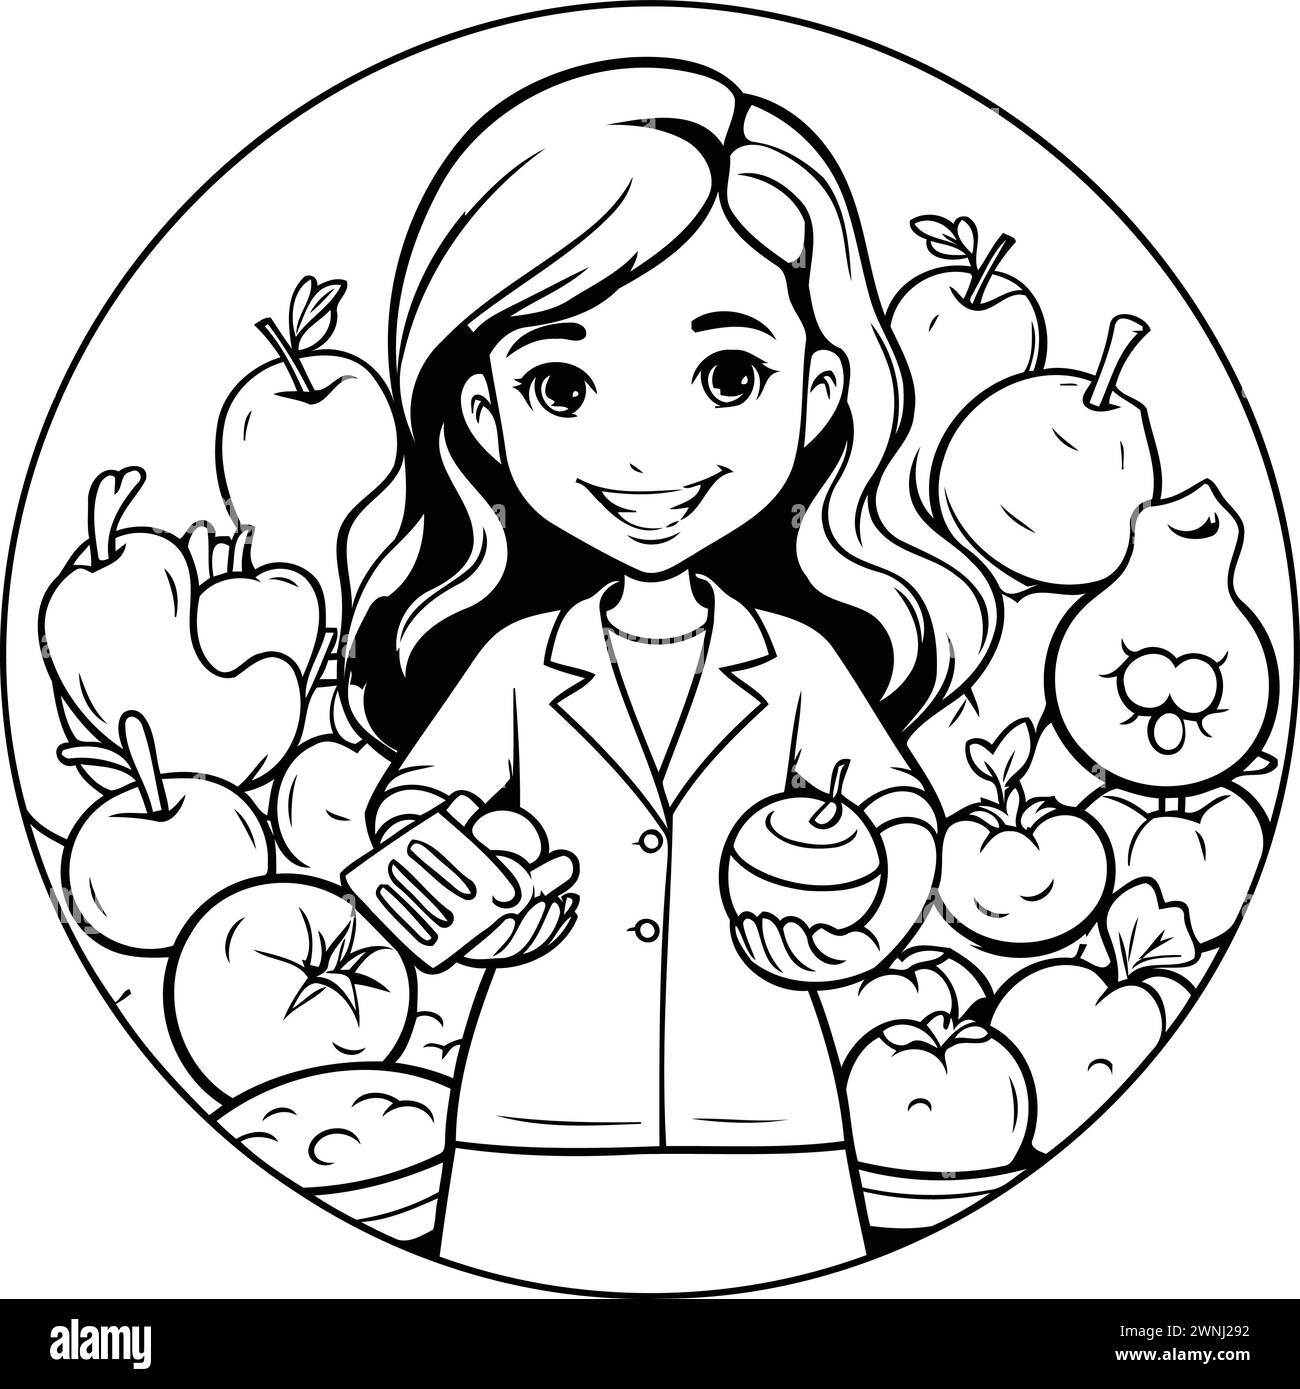 Livre de coloriage pour enfants : fille avec des fruits et légumes. Illustration vectorielle Illustration de Vecteur